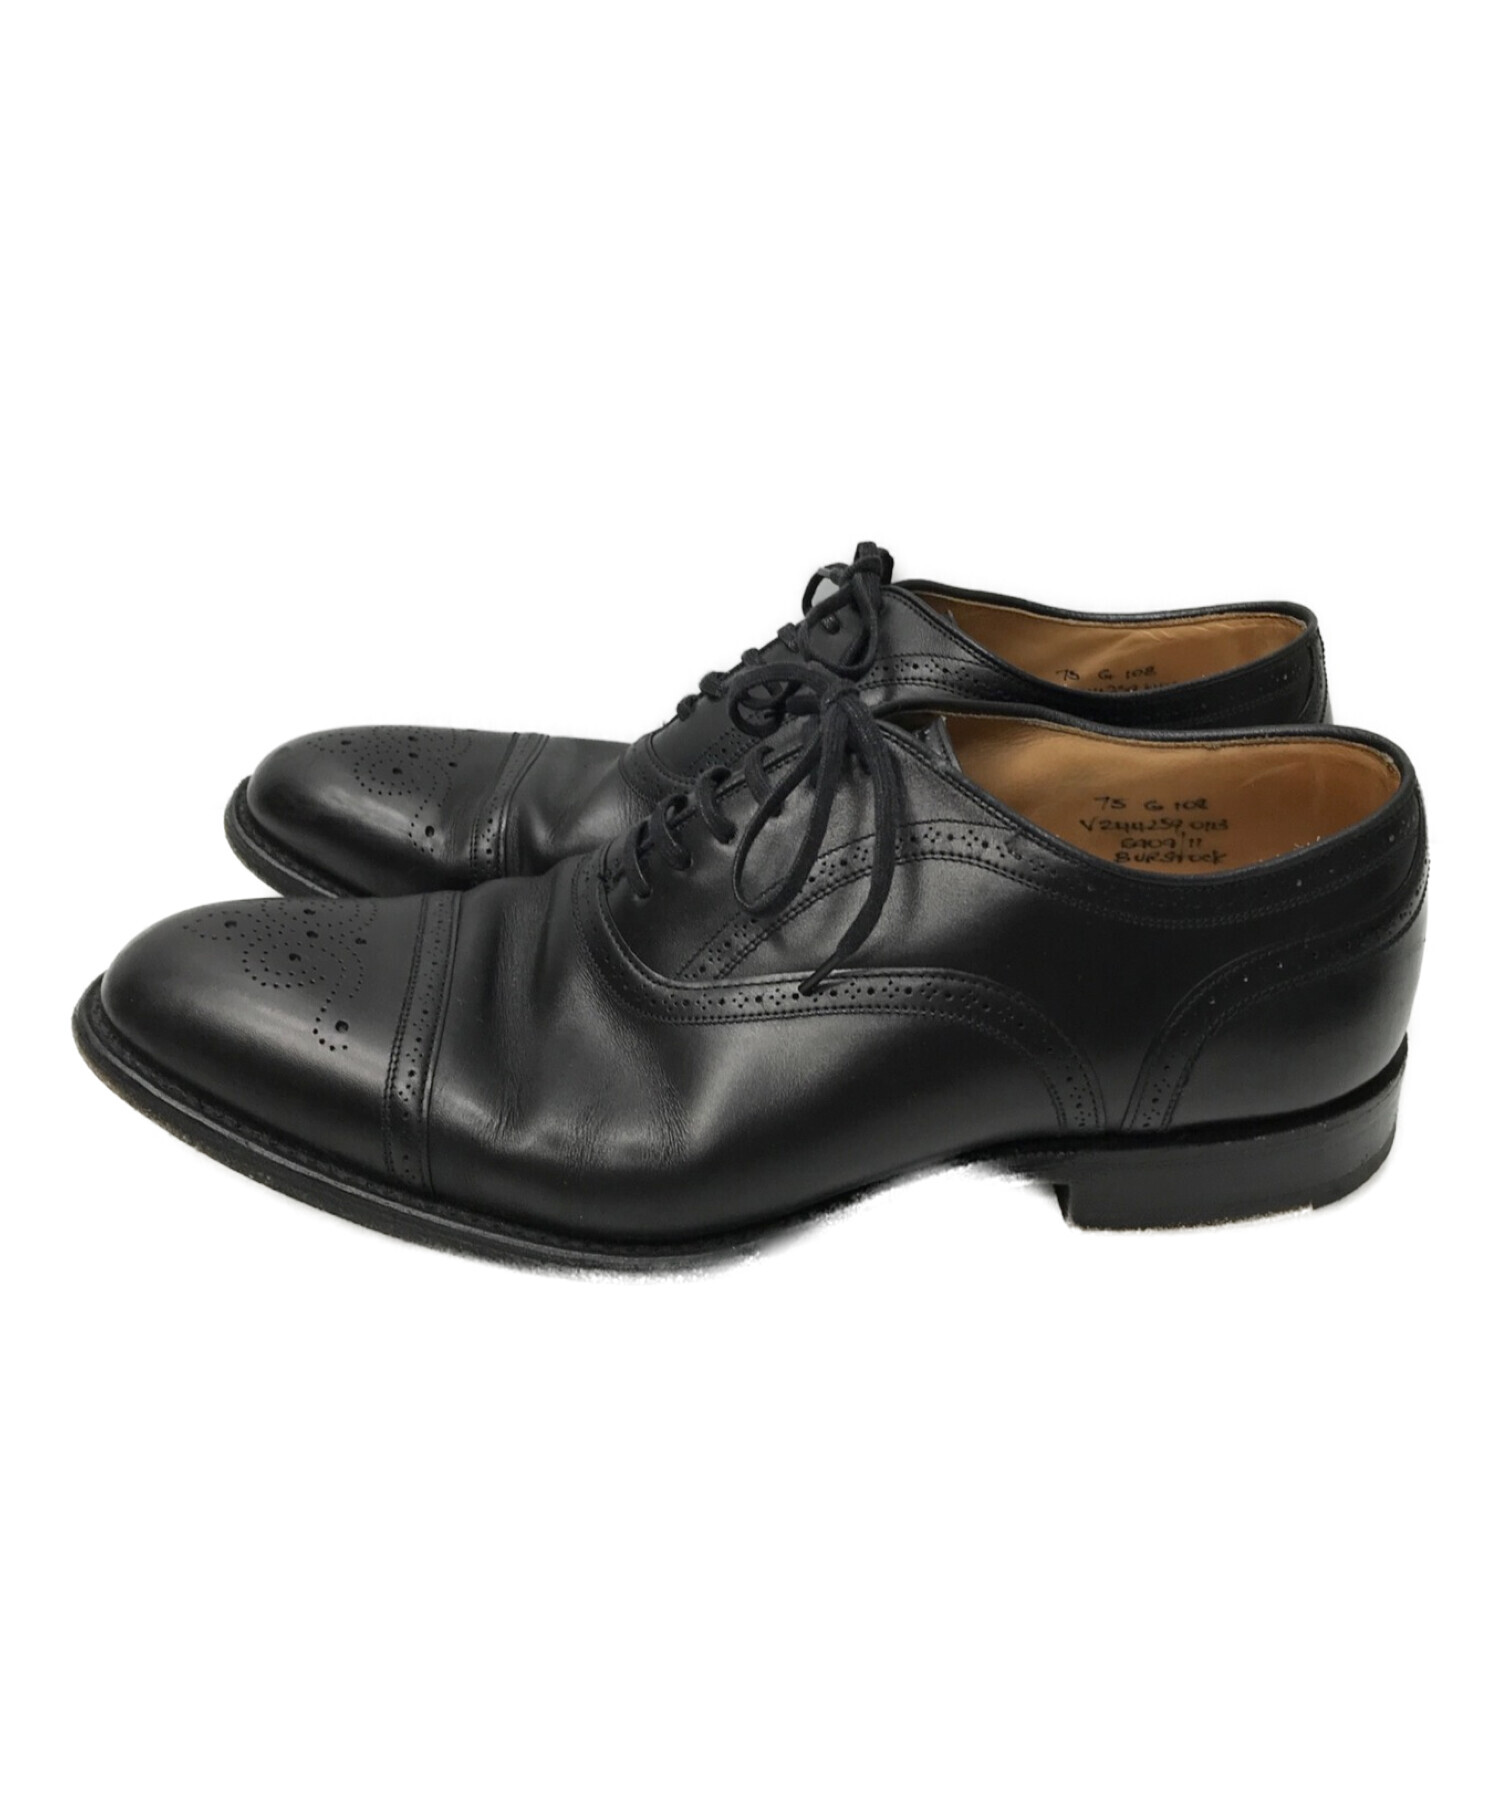 チャーチ Church's レザーシューズ オックスフォード メダリオン カーフレザー 革靴 メンズ 95F(27?27.5cm) ブラック